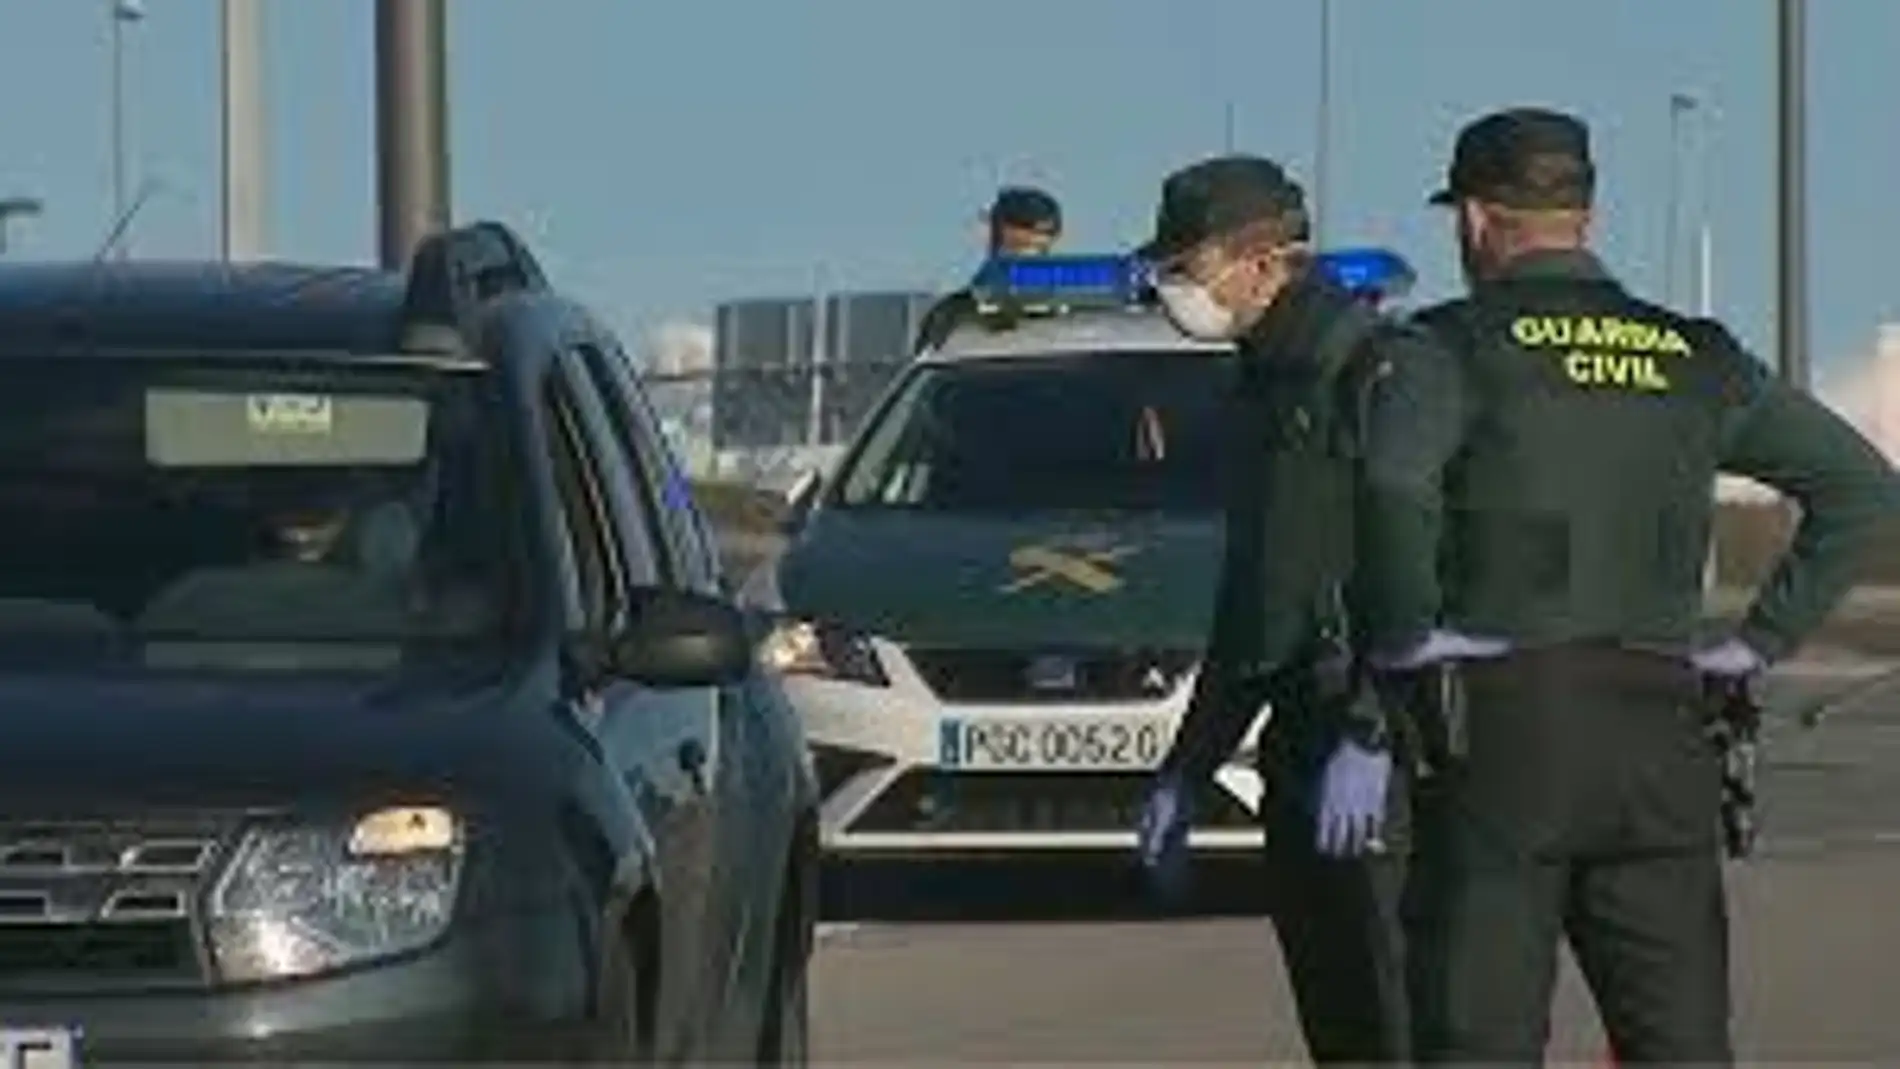 La Guardia Civil establece 4 puntos de entrada y salida en La Solana